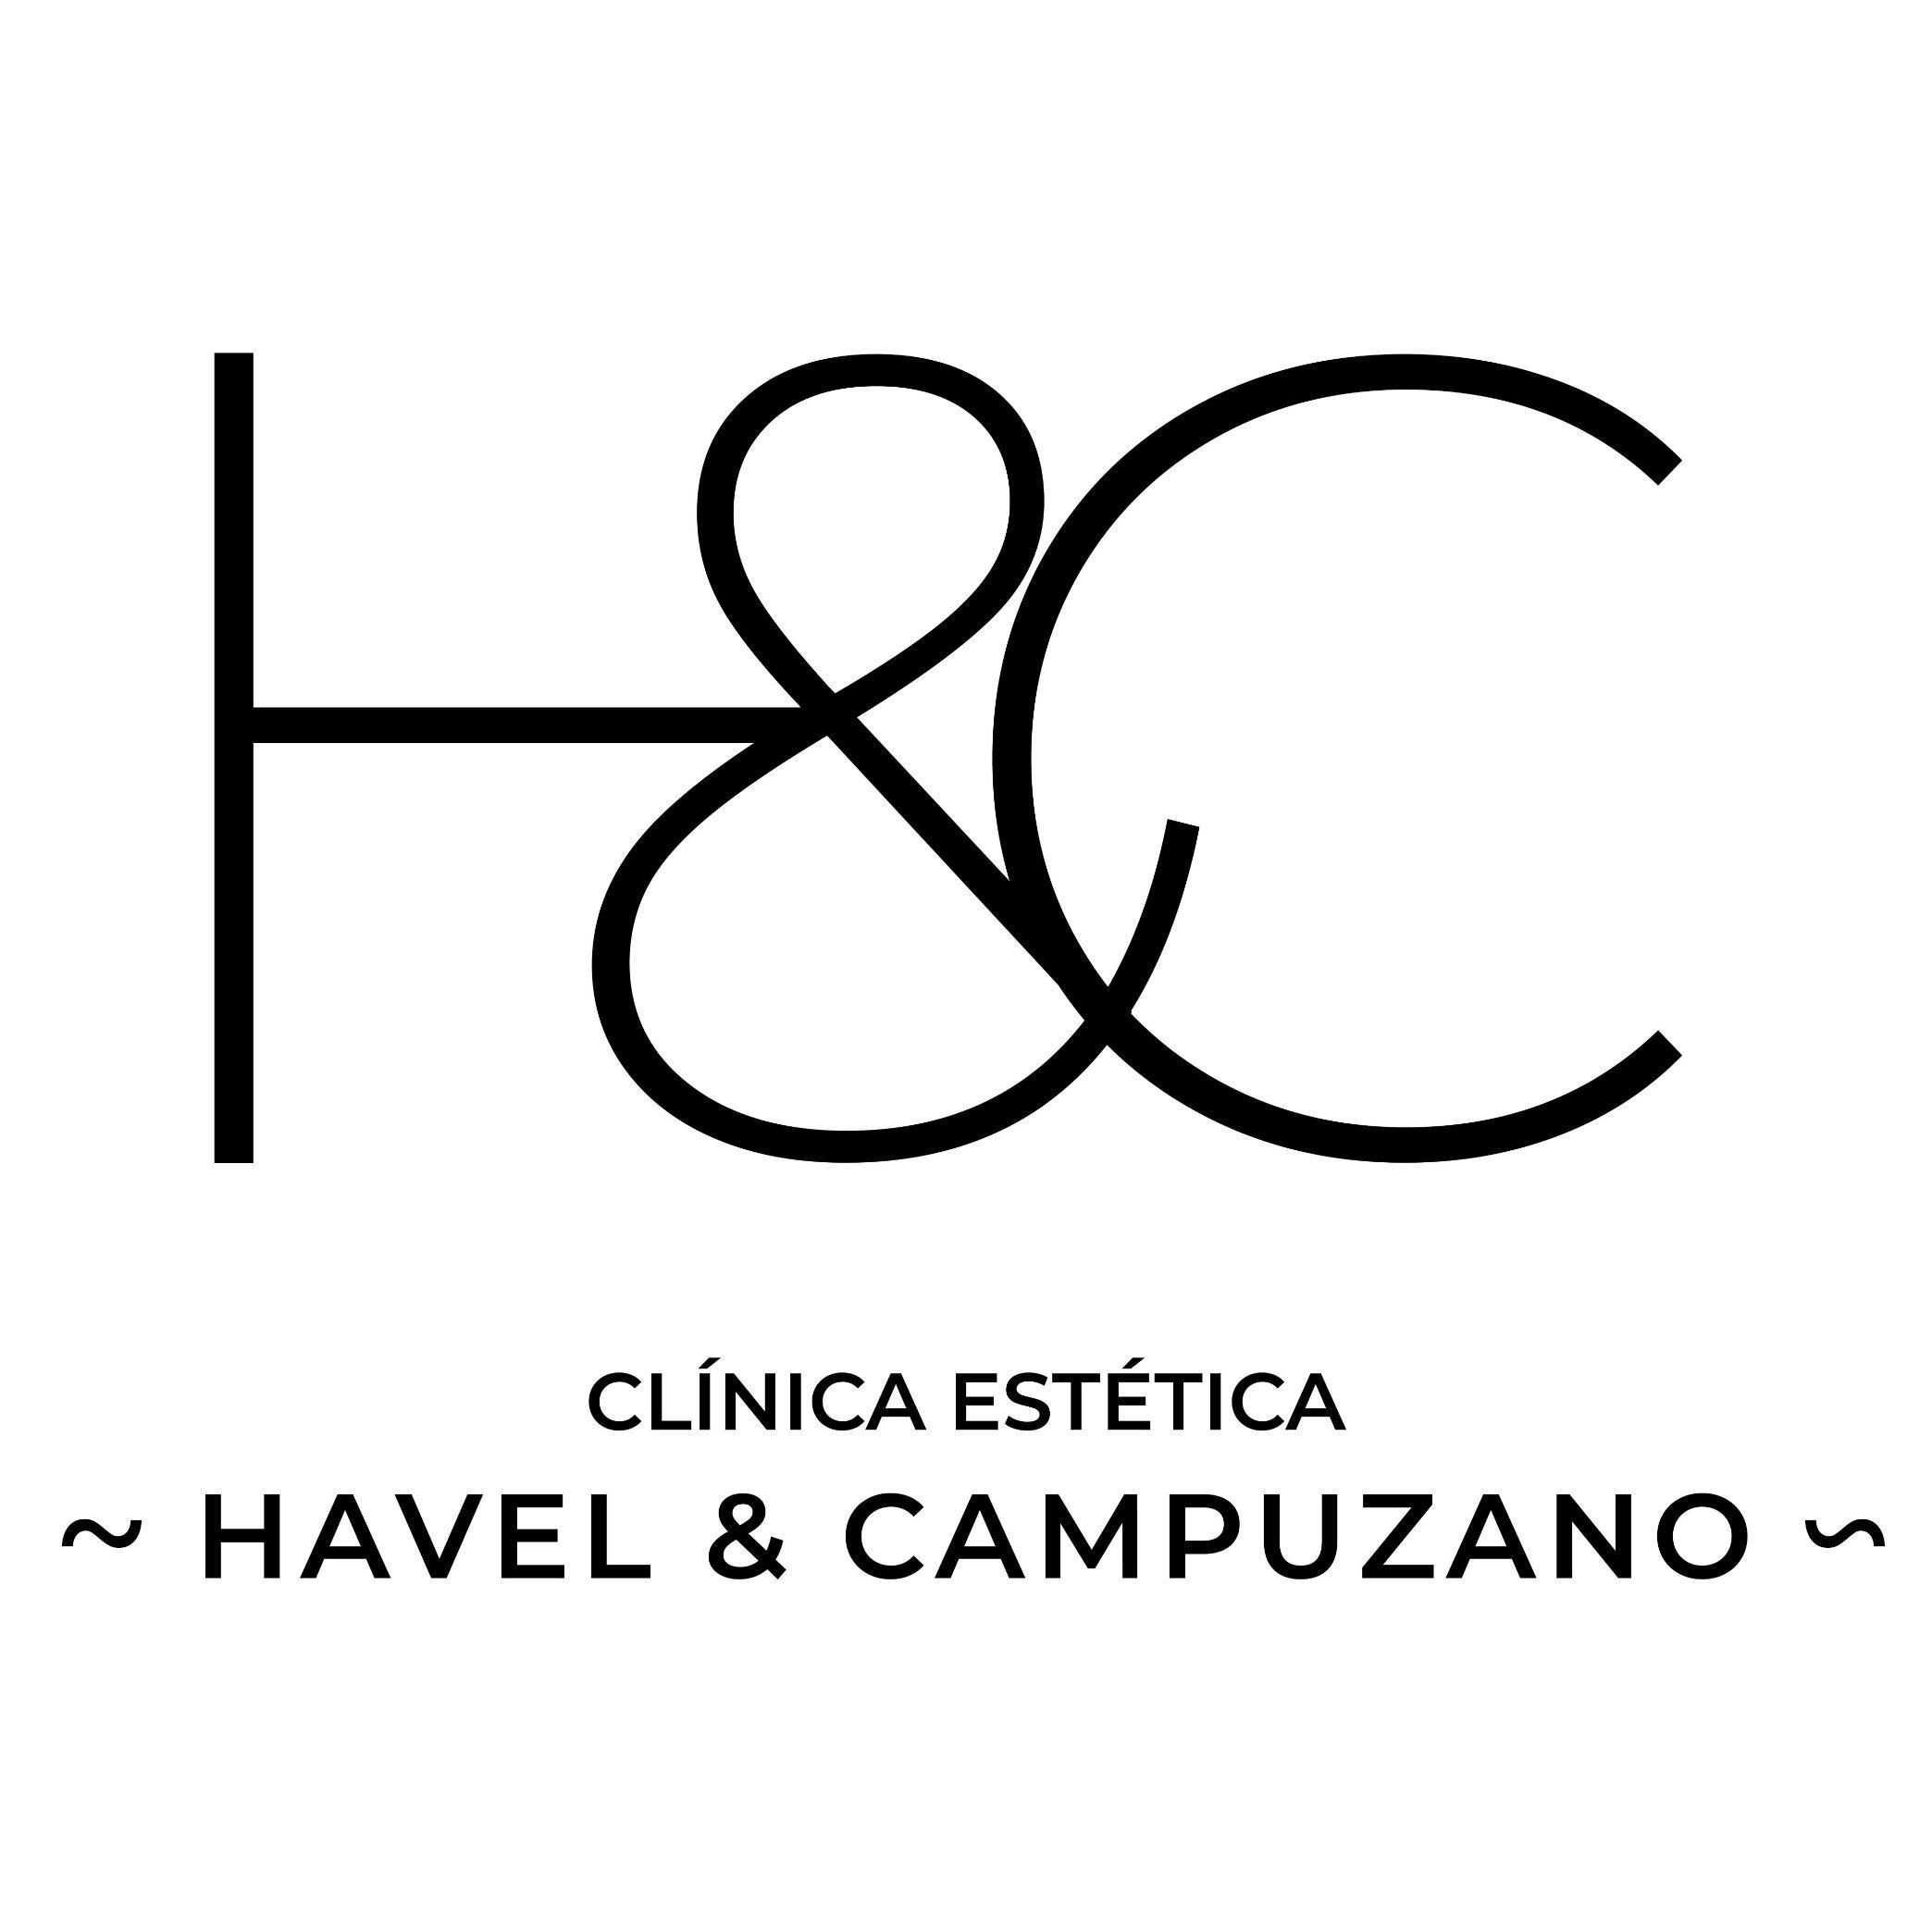 Clínica Estética HAVEL & CAMPUZANO, Avenida Libertad, 44, Avenida de la Libertad 46, Elche, 03205, Elche